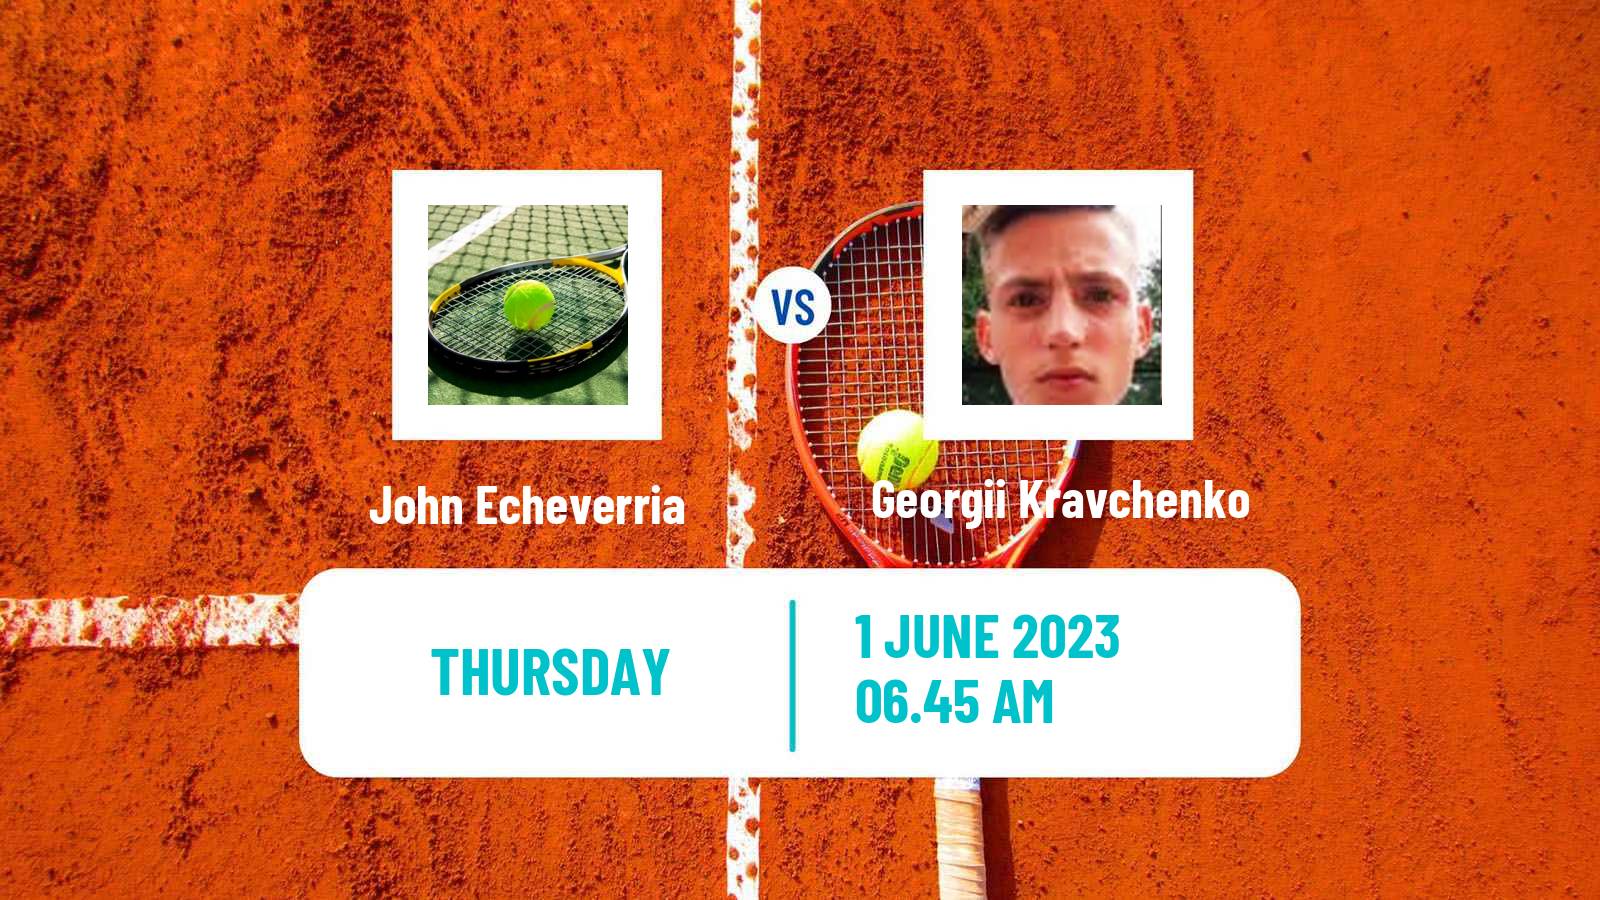 Tennis ITF M25 La Nucia Men John Echeverria - Georgii Kravchenko